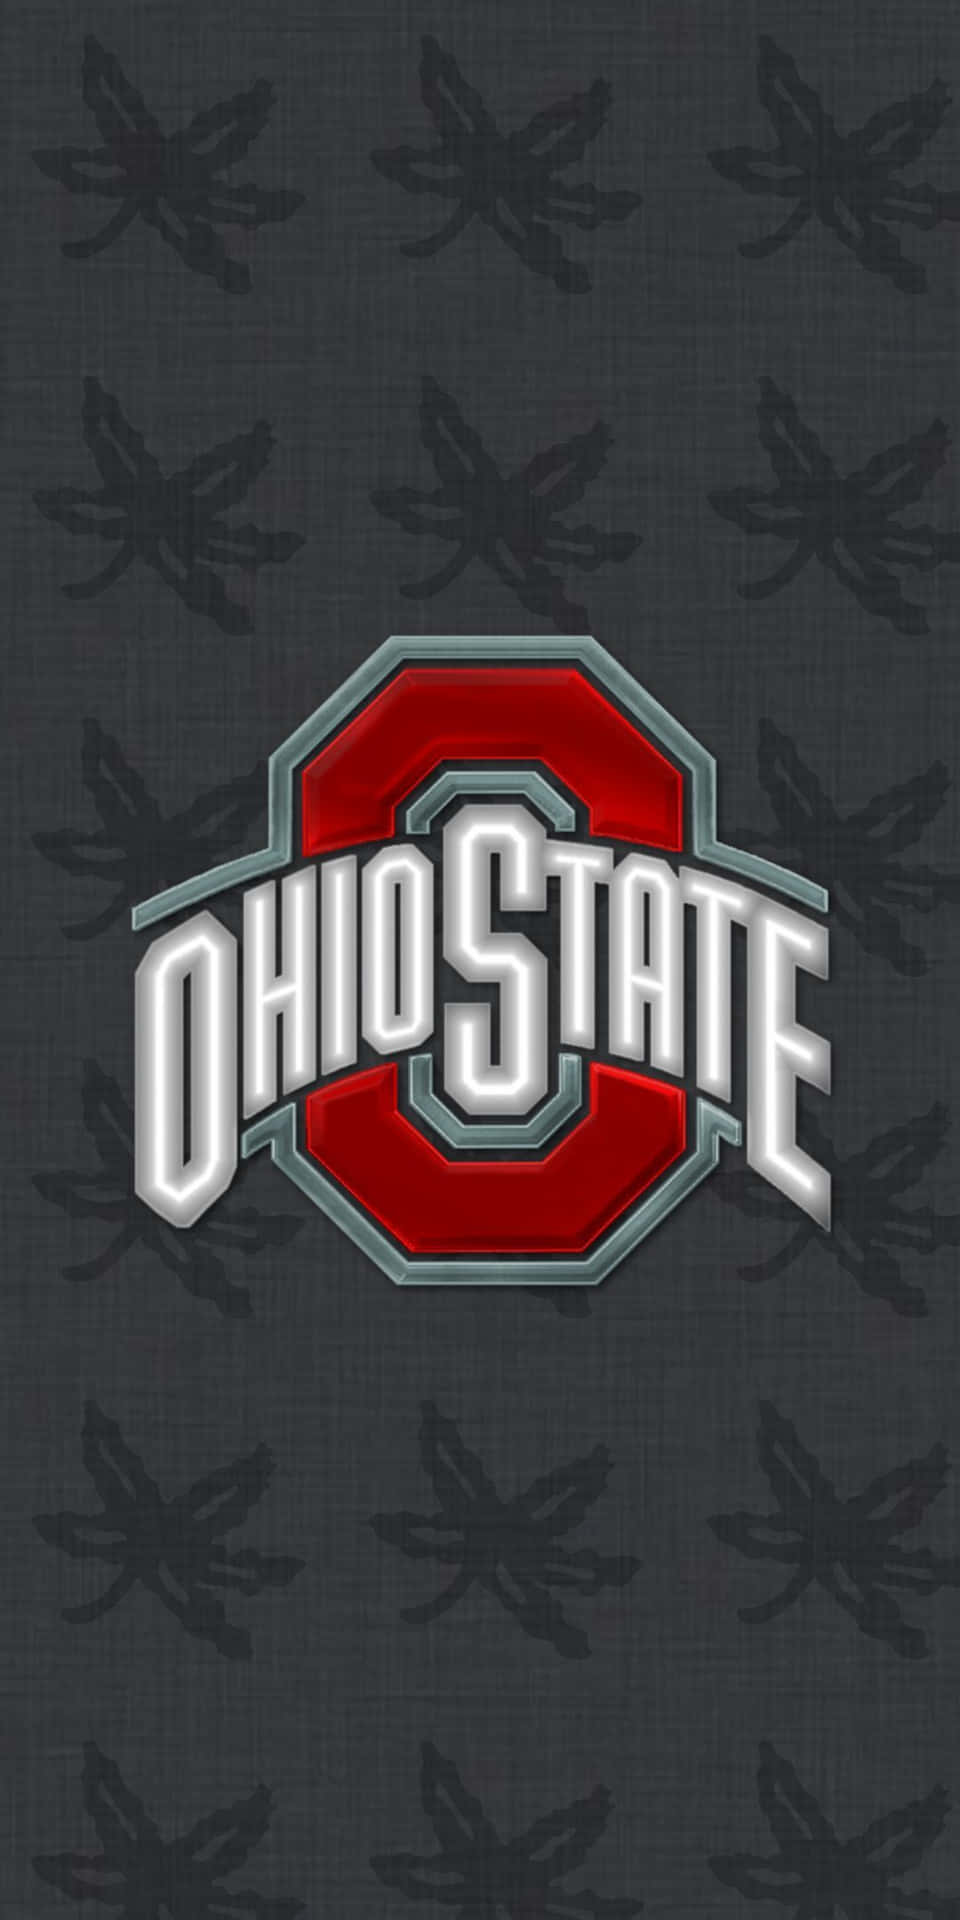 Mantenteactualizado Con El Fútbol De Ohio State En Tu Iphone. Fondo de pantalla